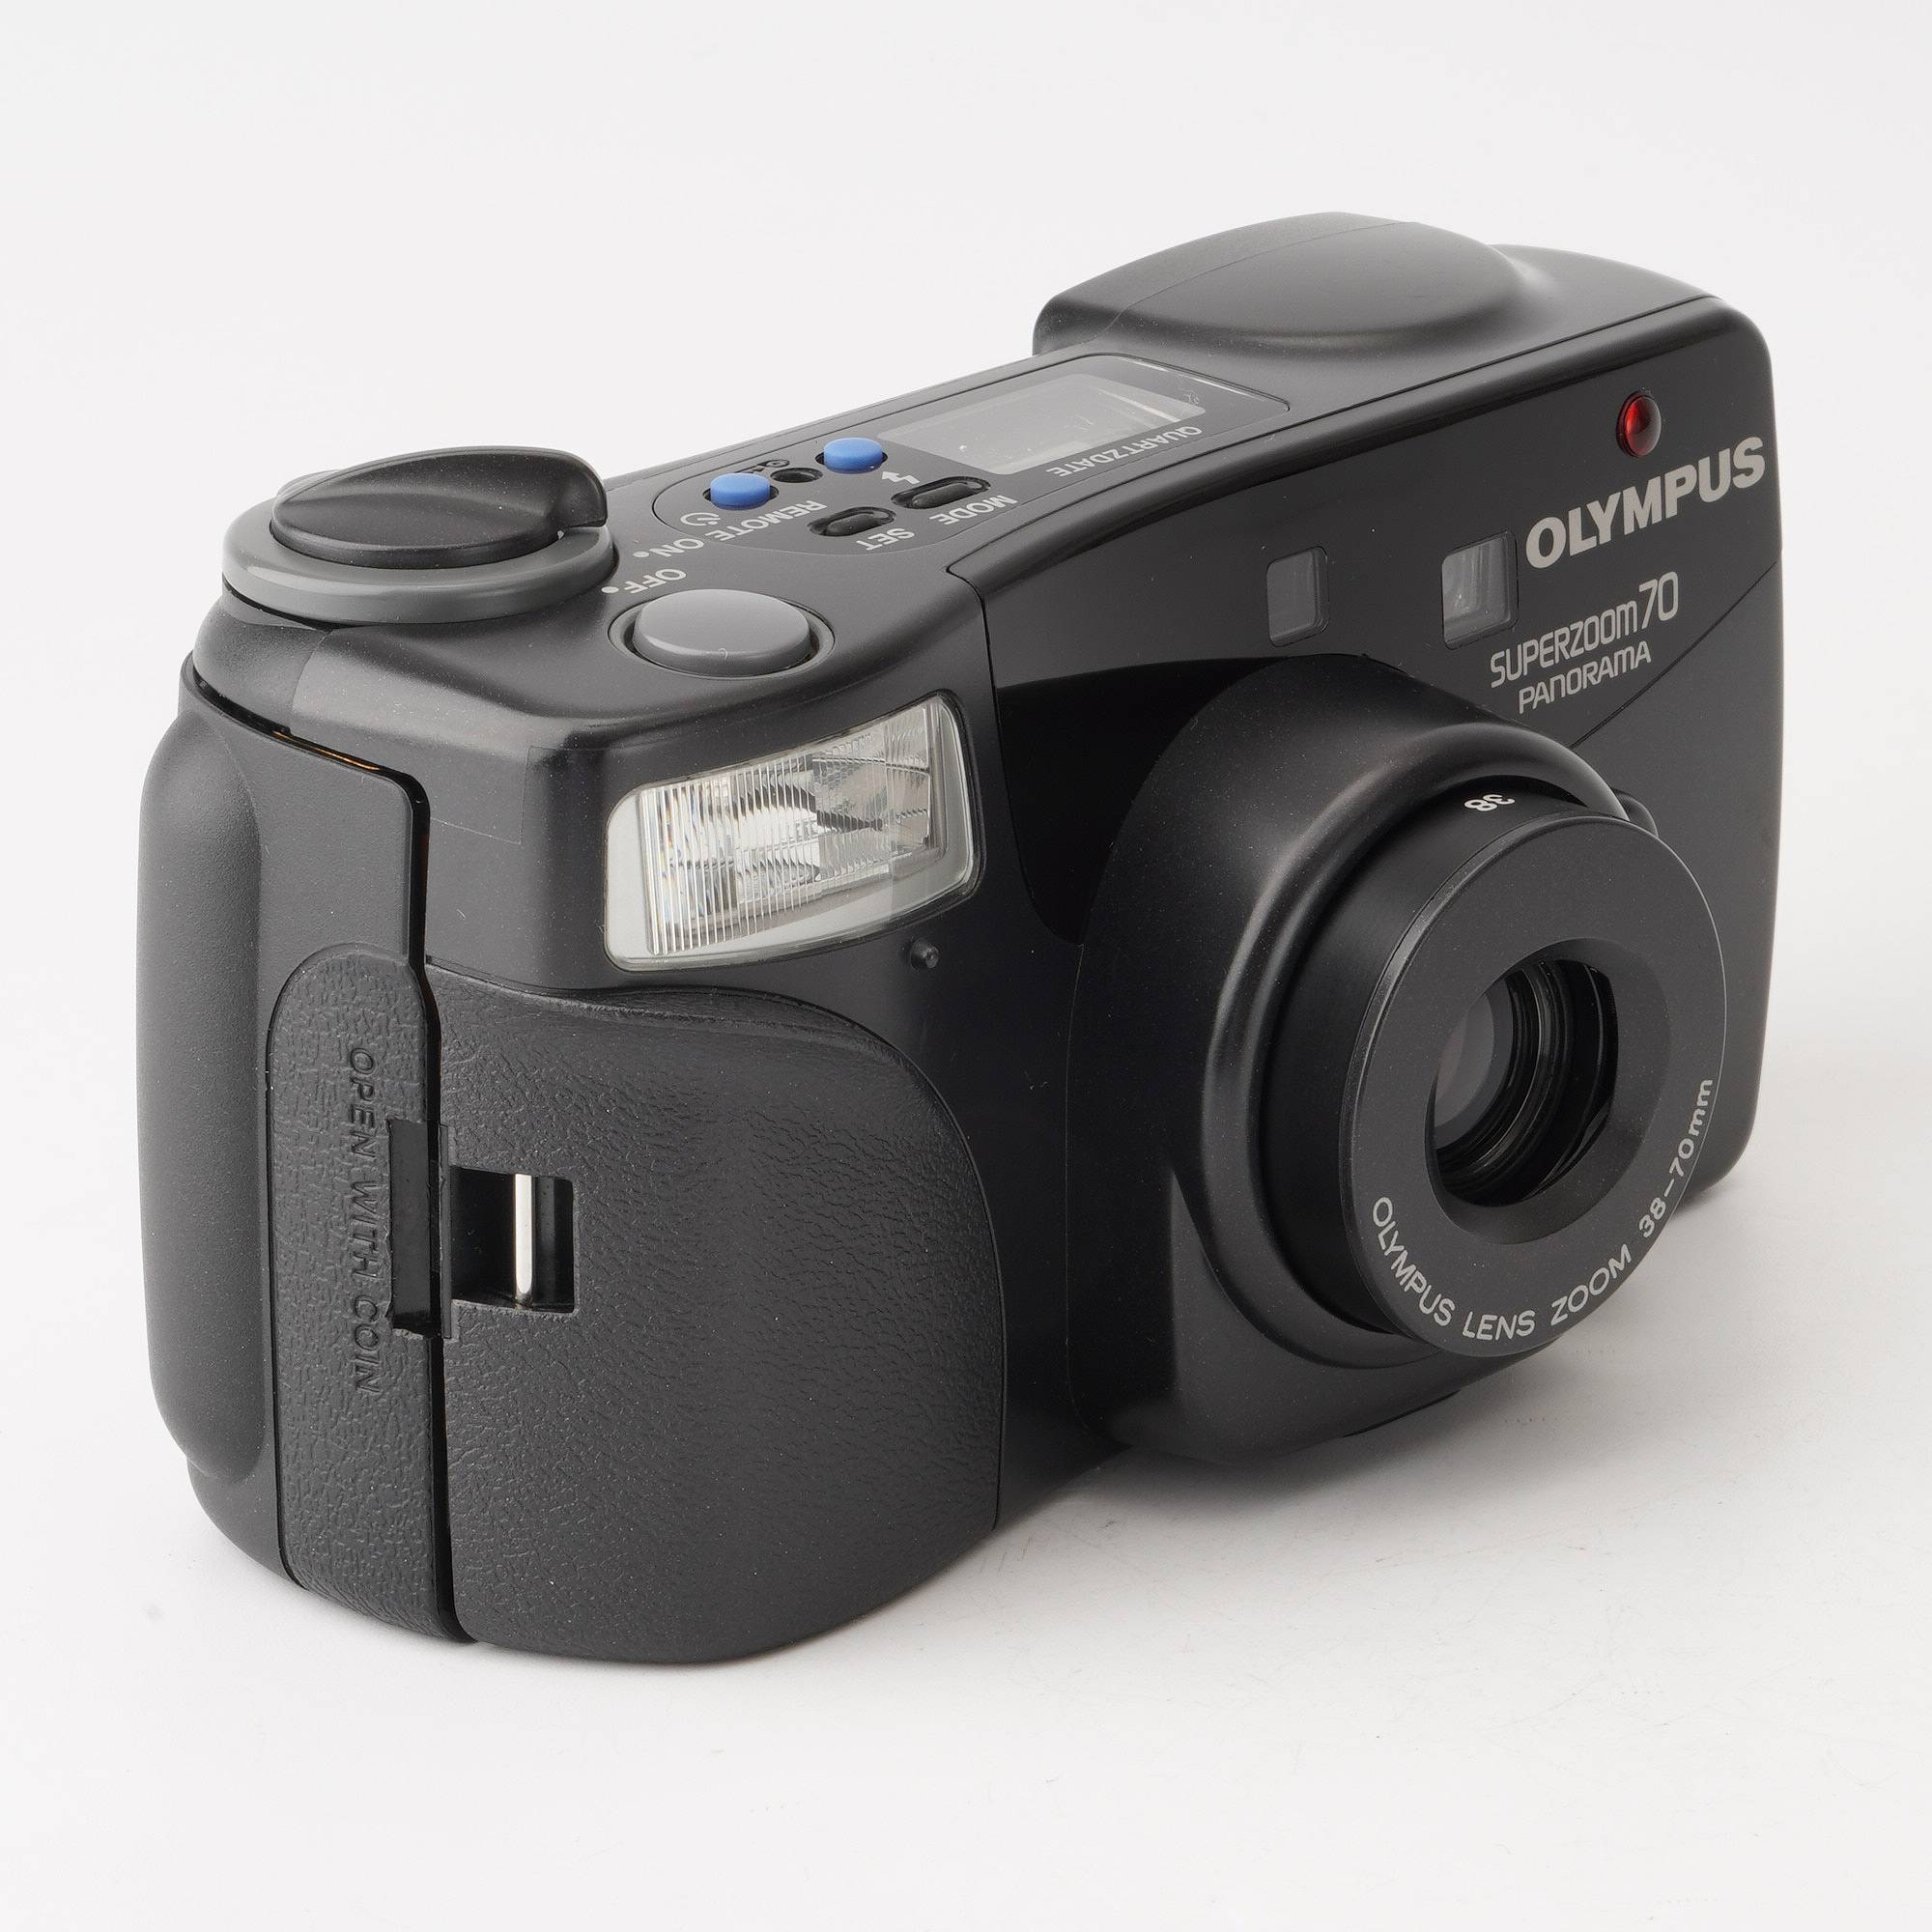 オリンパス Olympus SUPERZOOM 70 PANORAMA / ZOOM 38-70mm – Natural Camera / ナチュラル カメラ